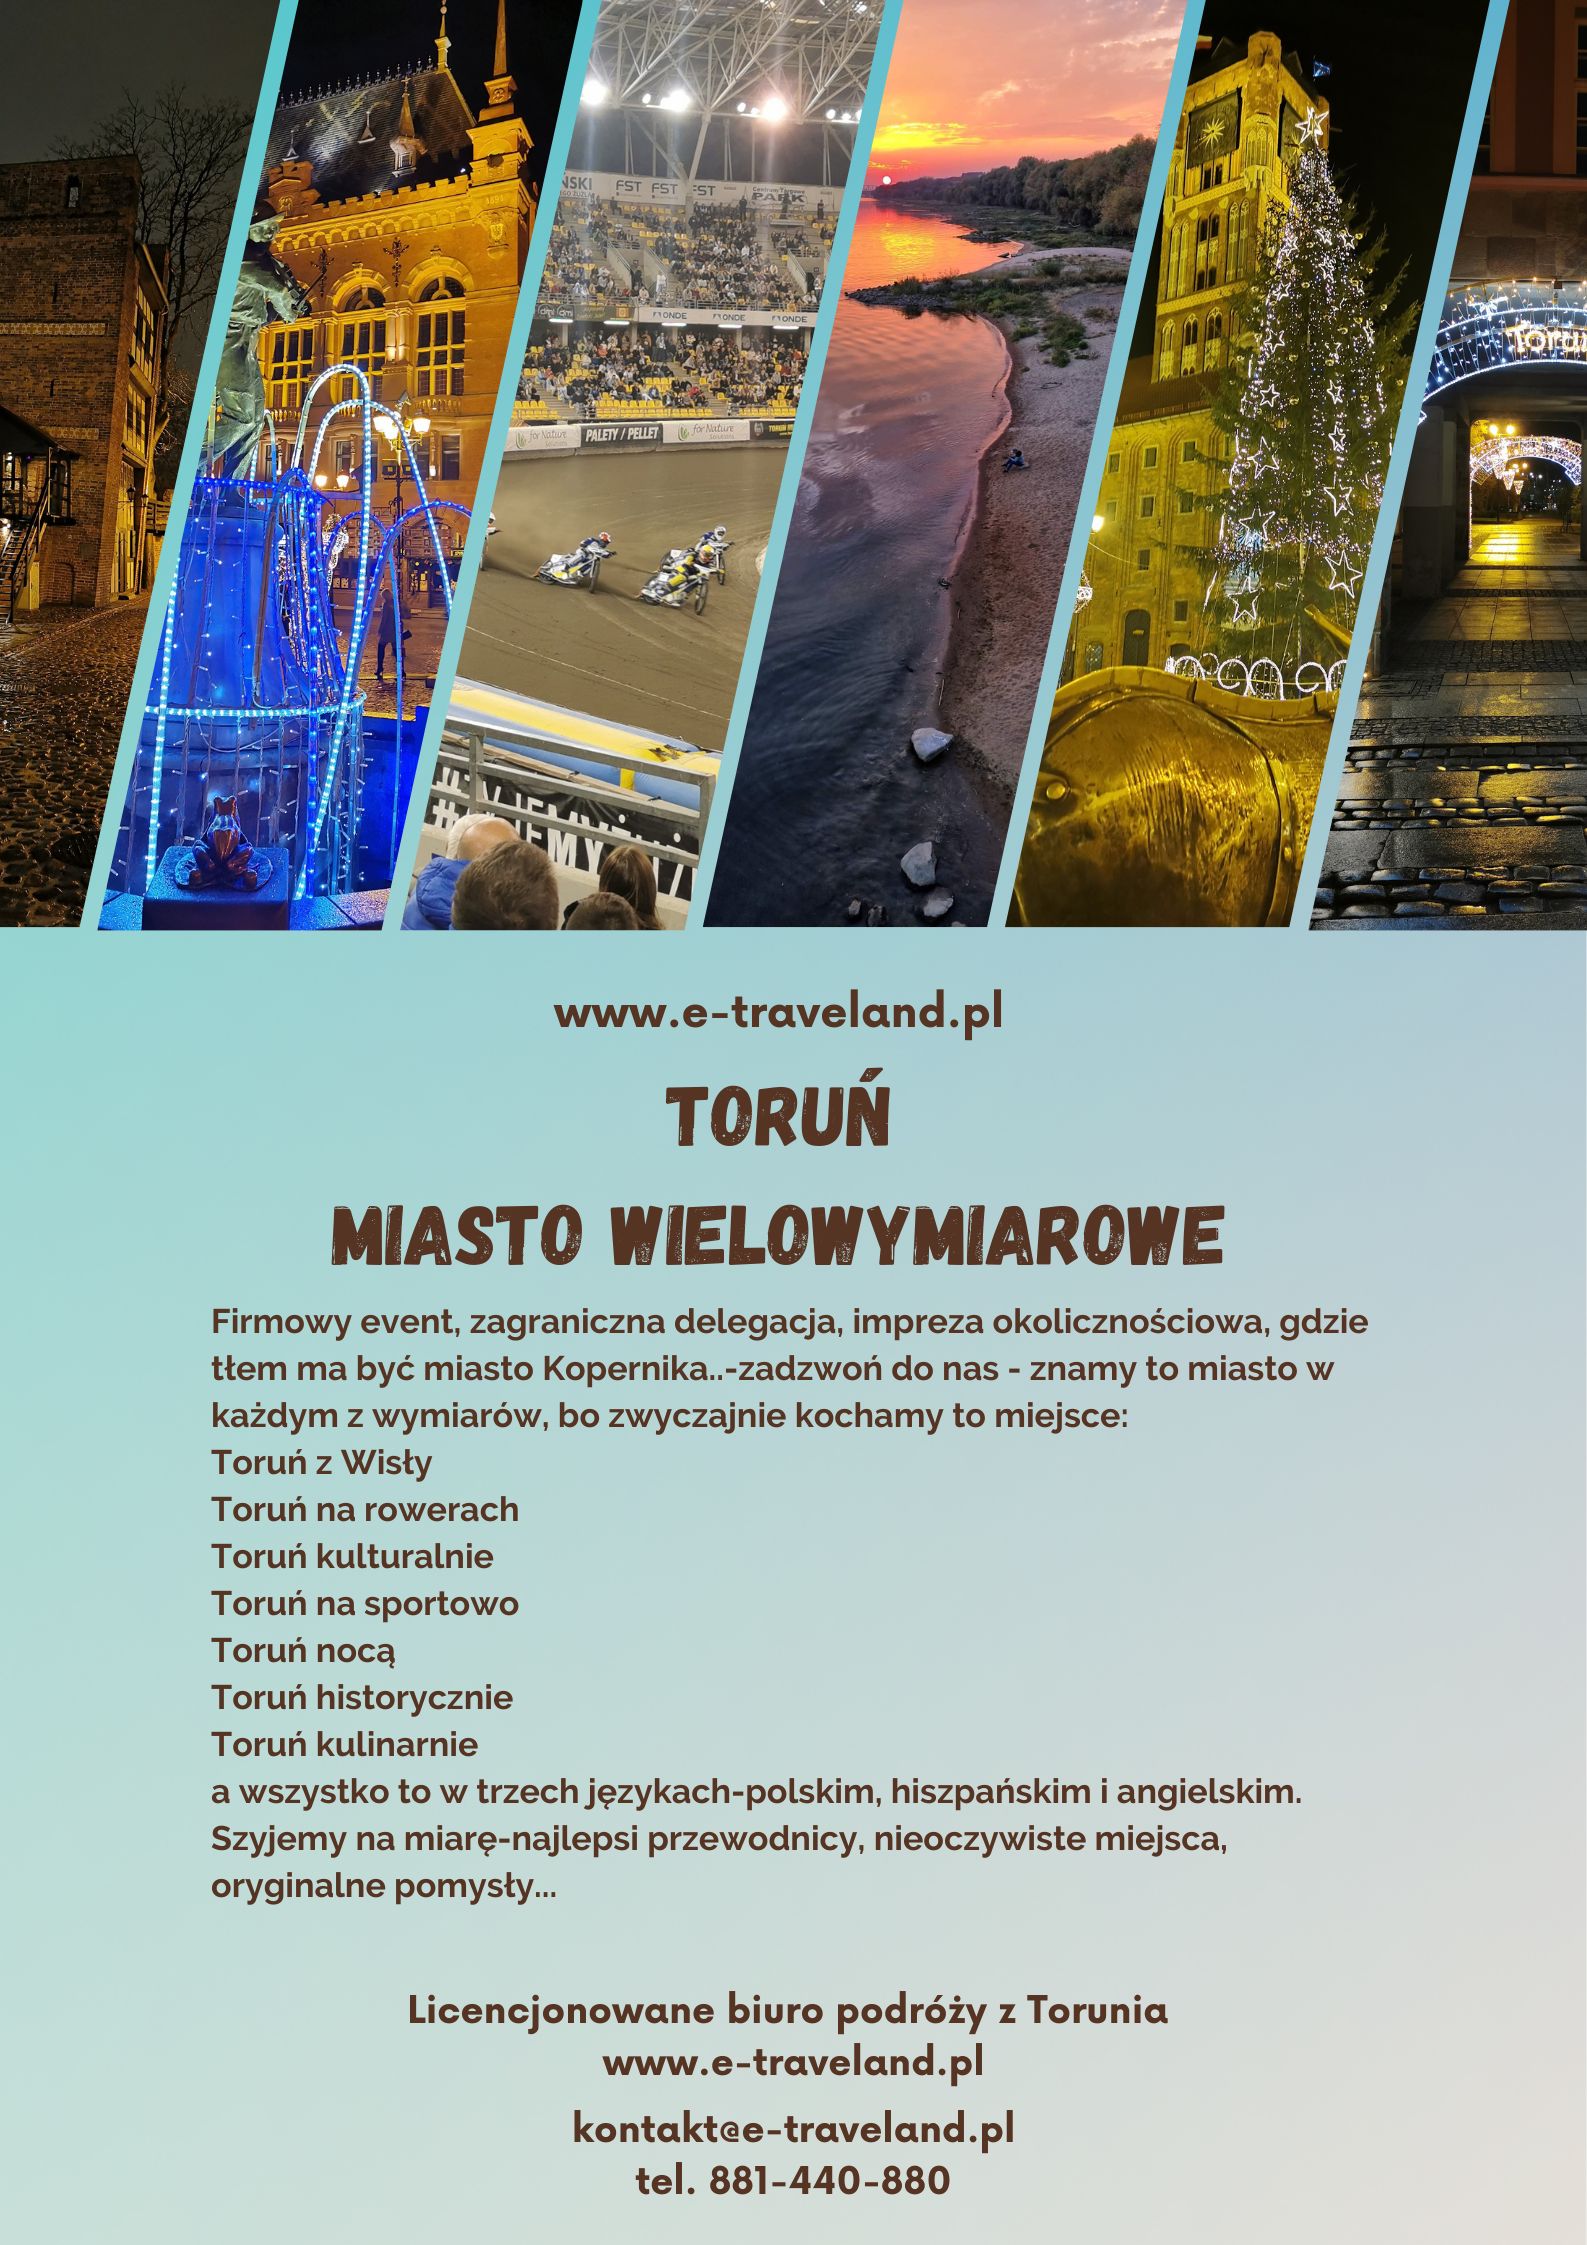 Toruń - miasto wielowymiarowe